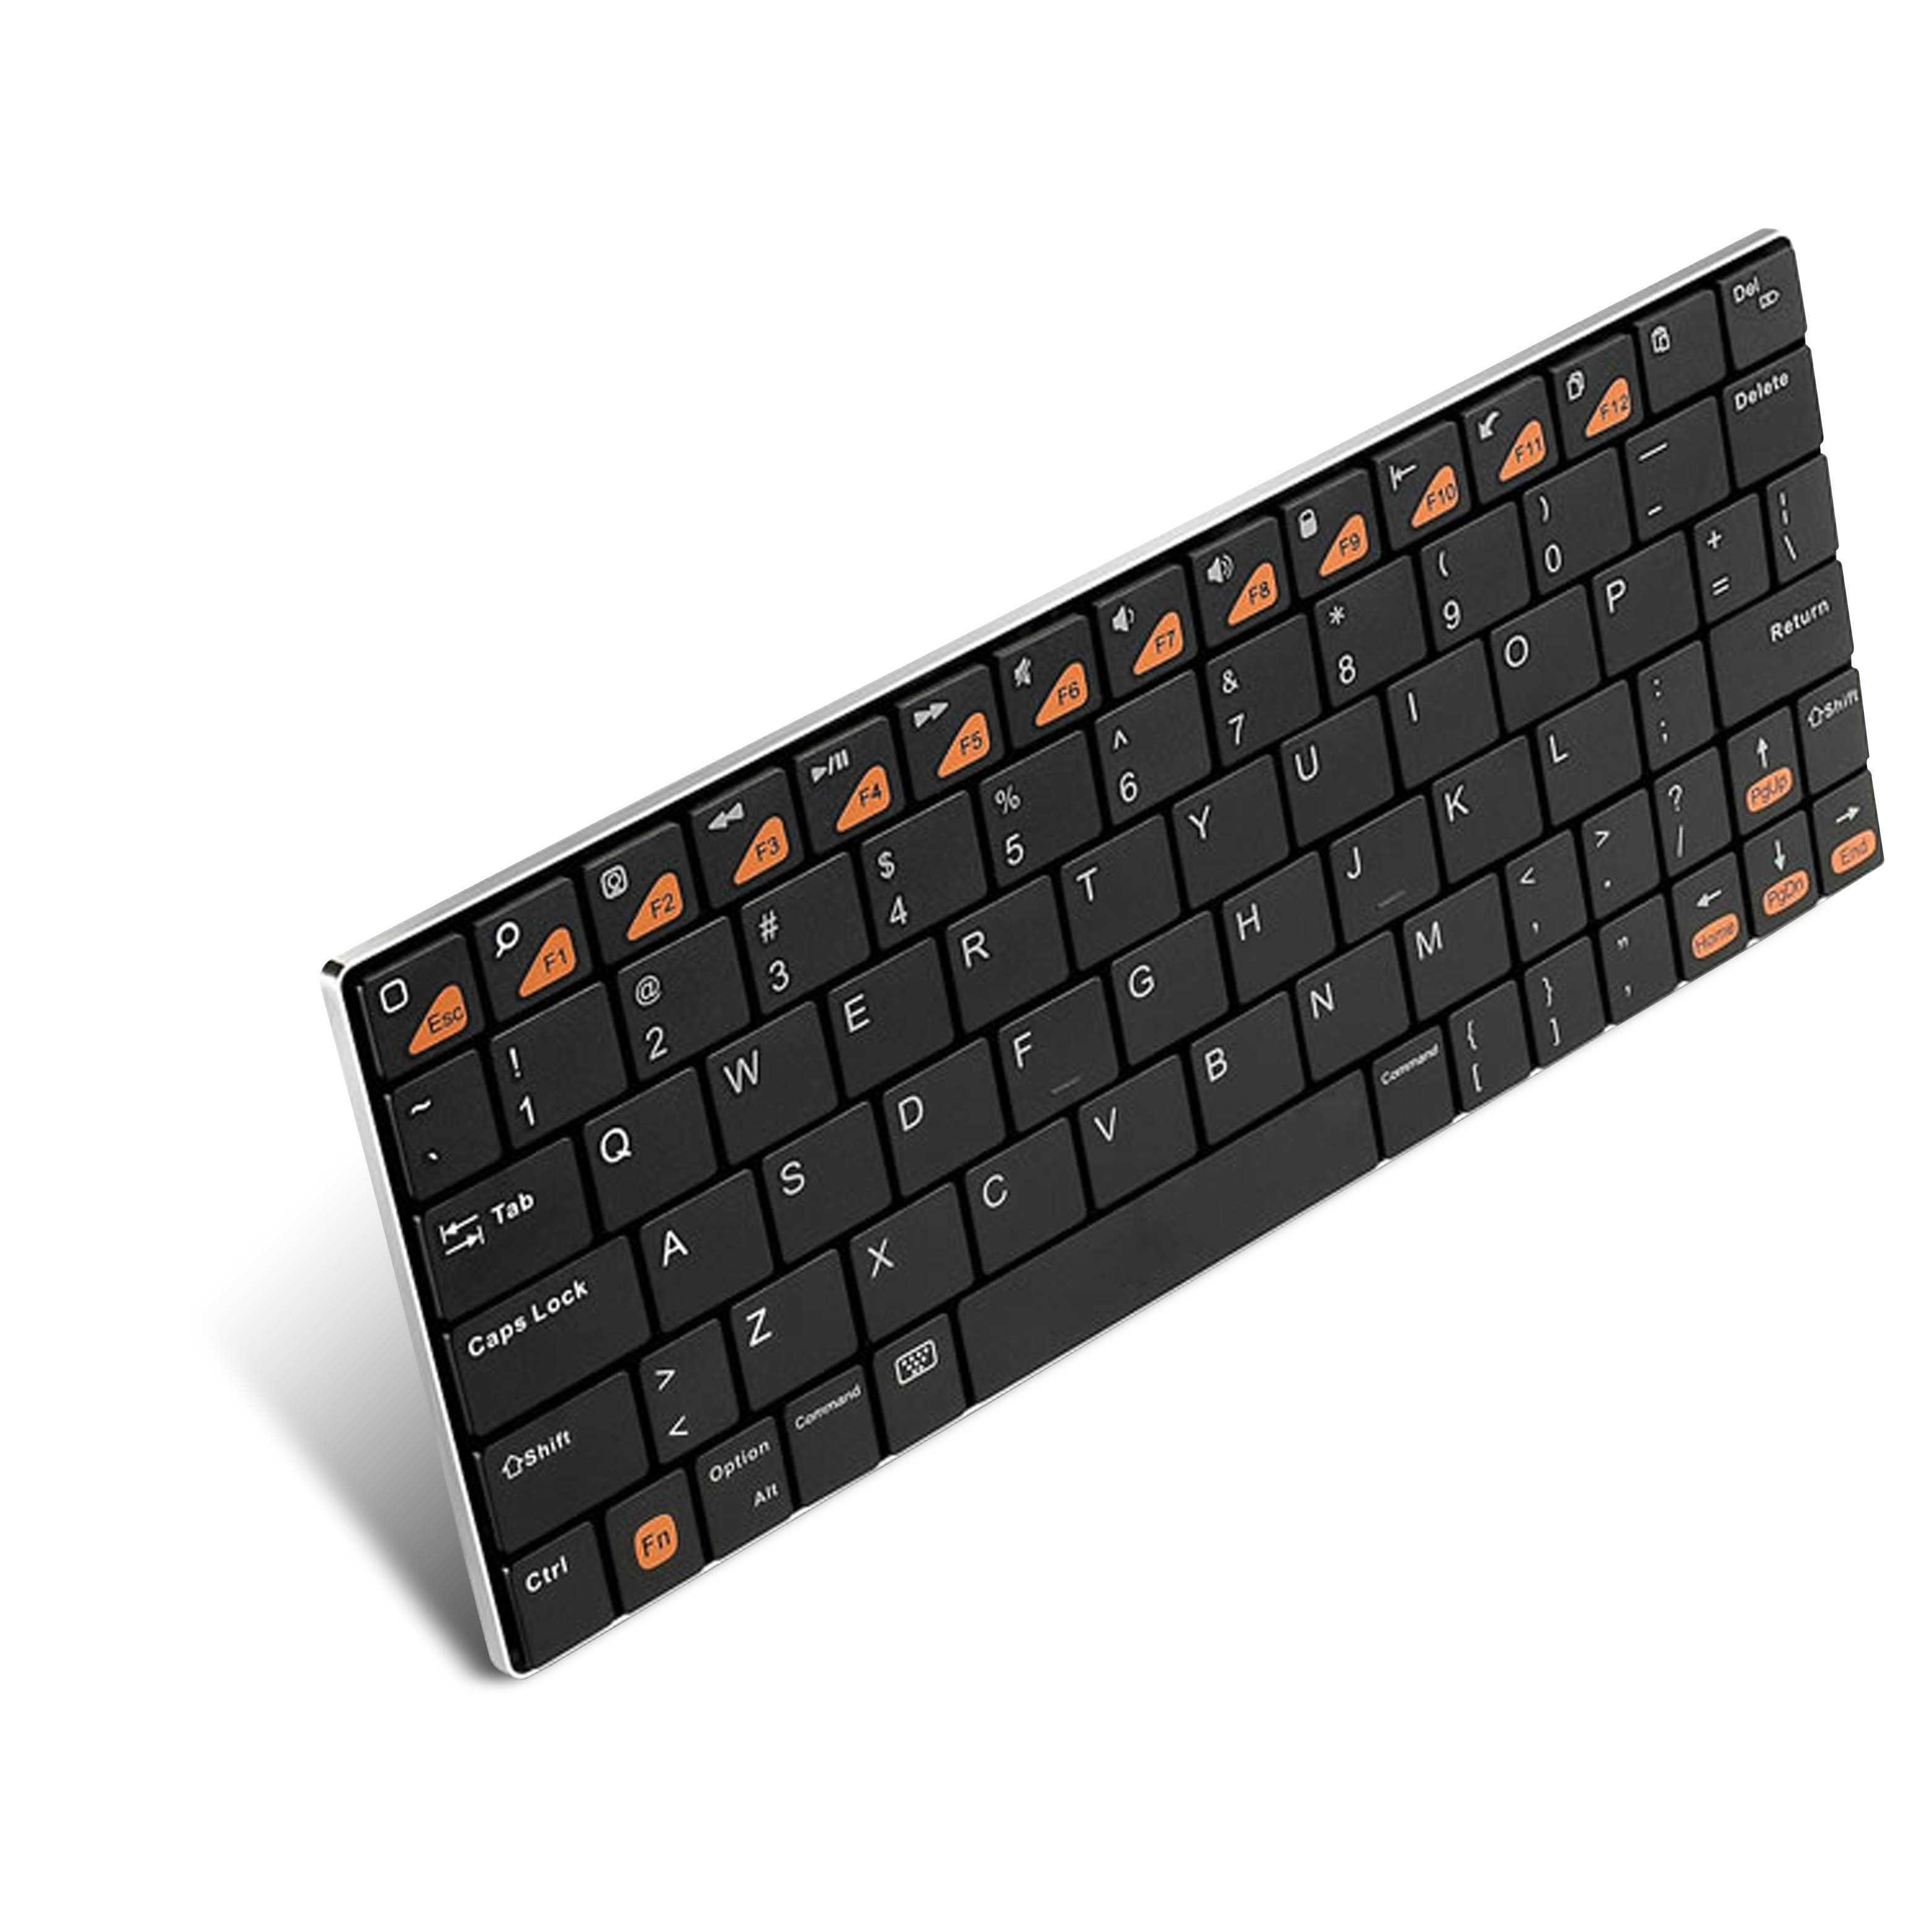 Клавиатура беспроводная rapoo e6300 black купить от 780 руб в нижнем новгороде, сравнить цены, отзывы, видео обзоры